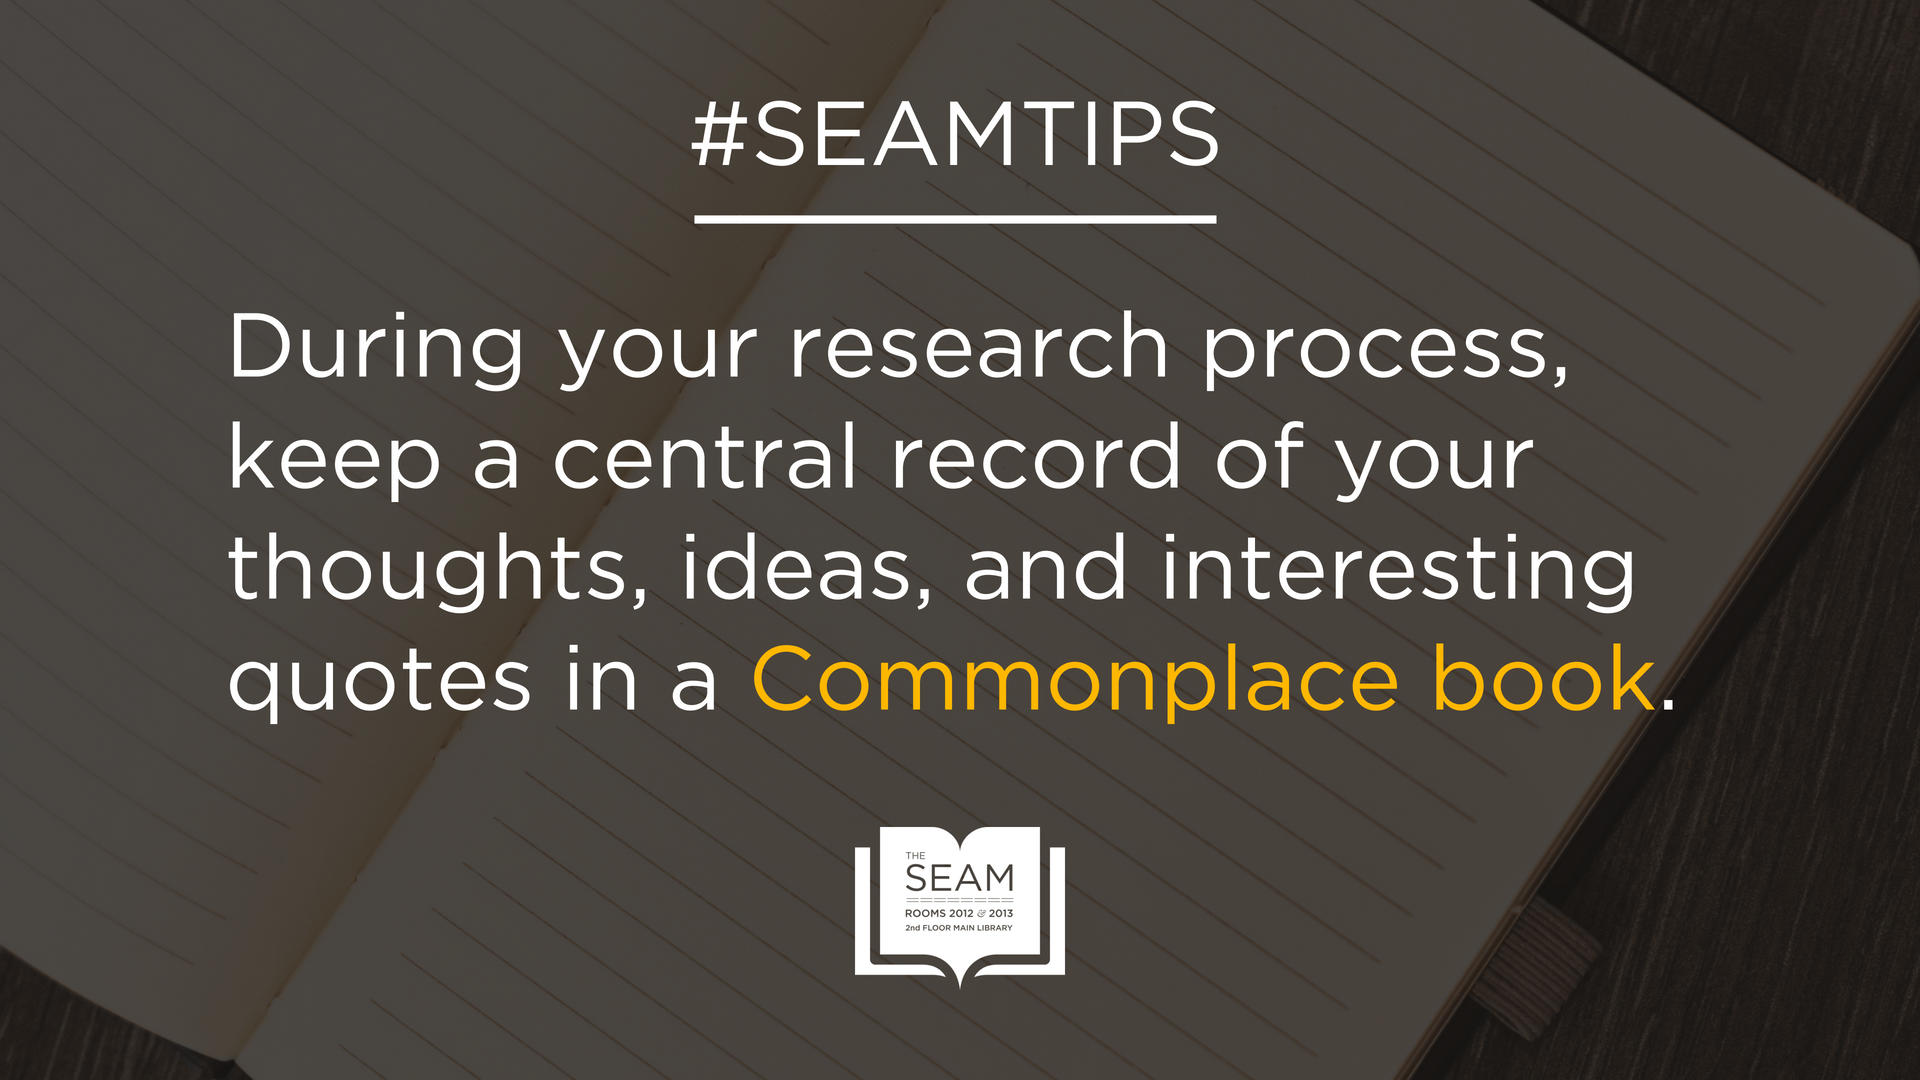 SEAM Tip - Commonplace book